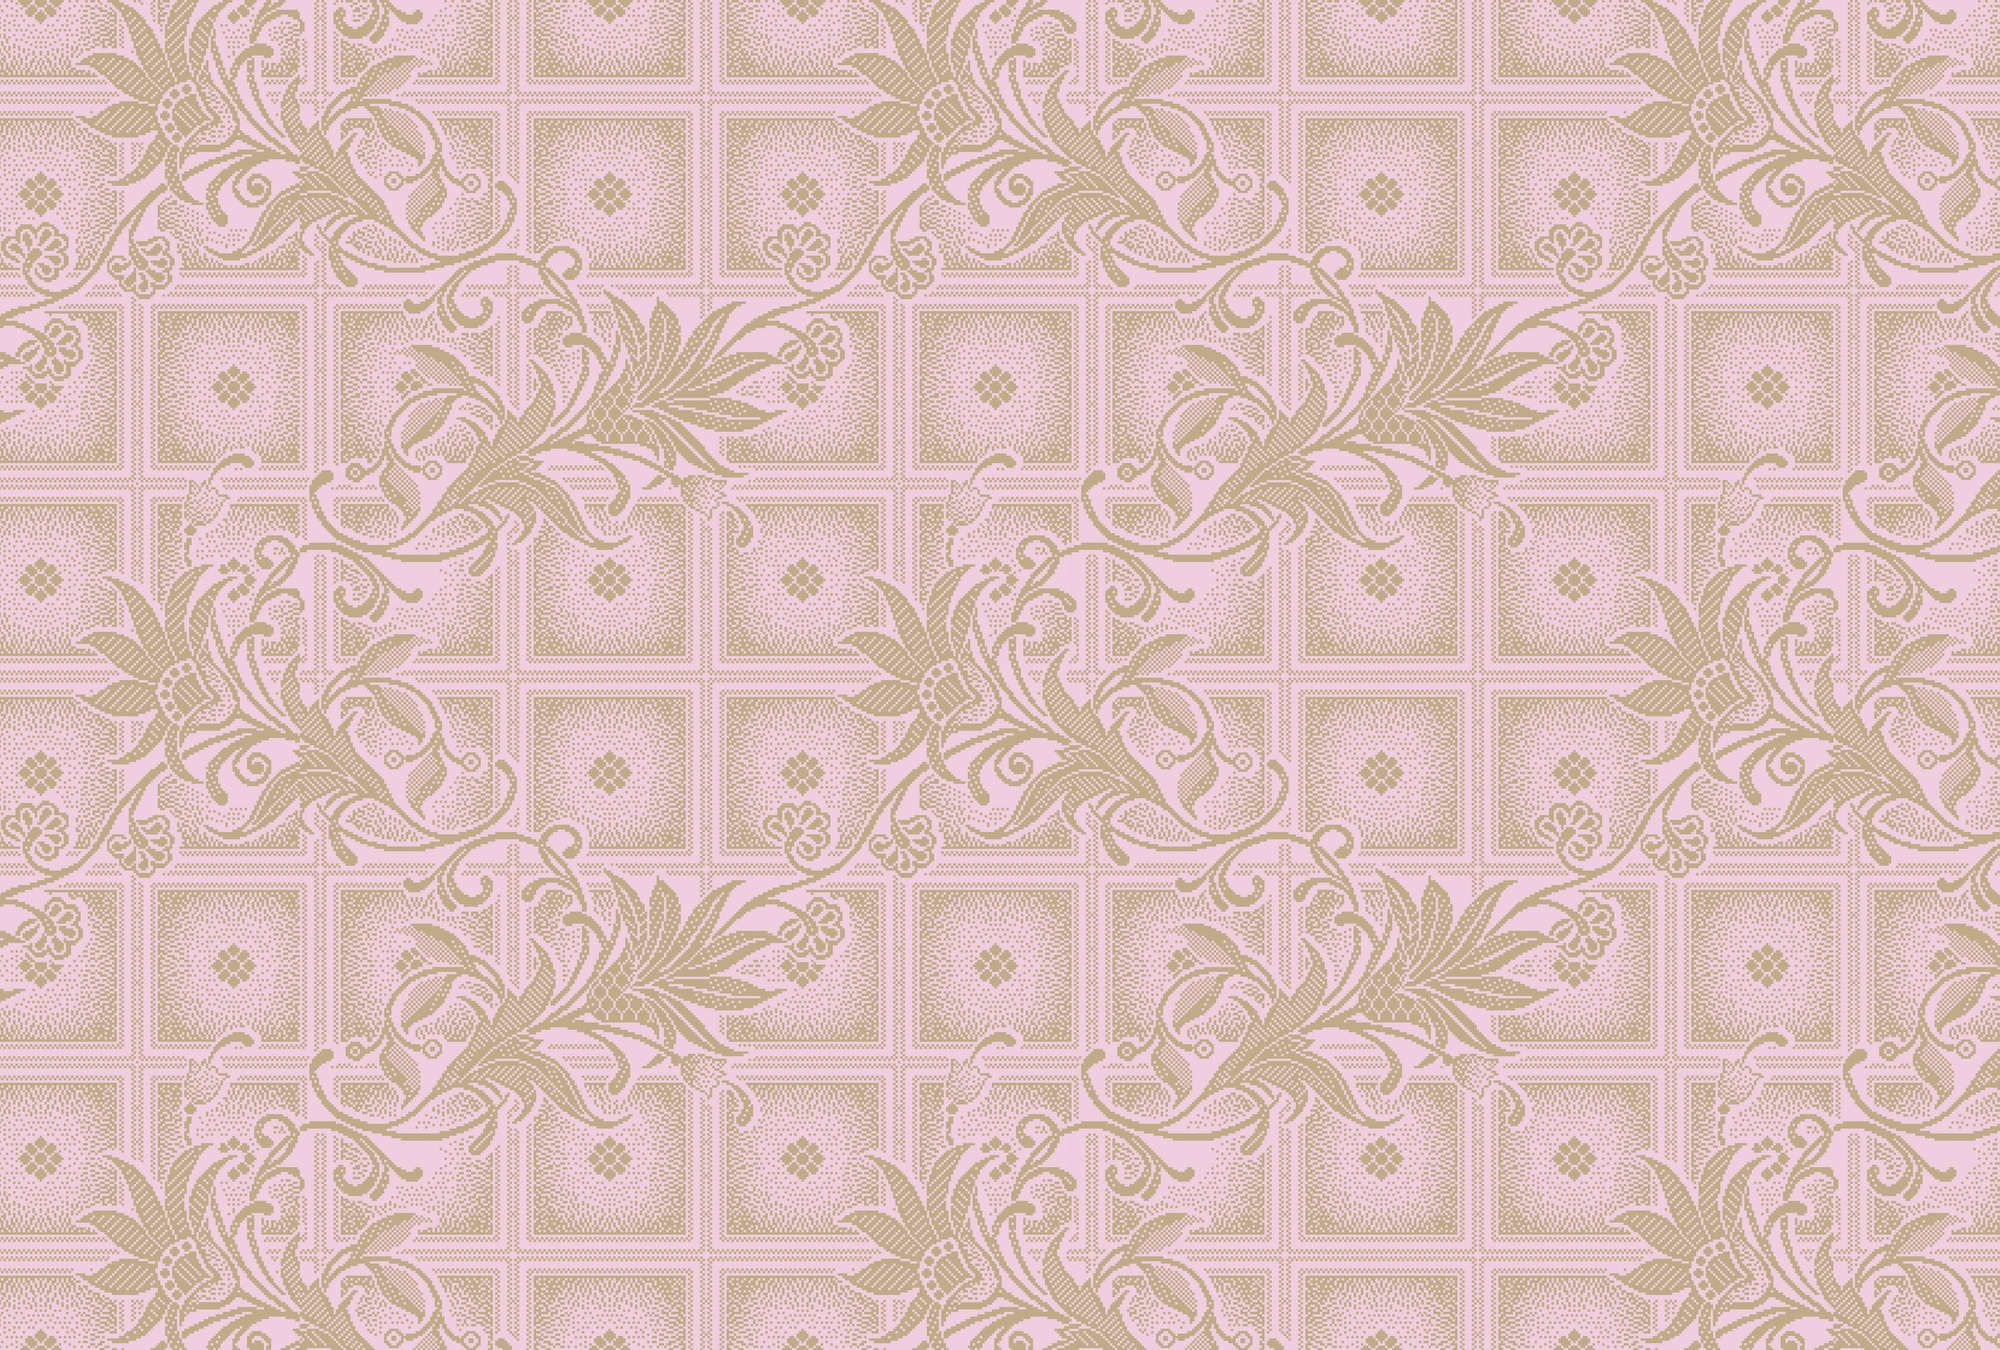             Digital behang »vivian« - Pixel stijl vierkantjes met bloemen - Roze | Licht structuurvlies
        